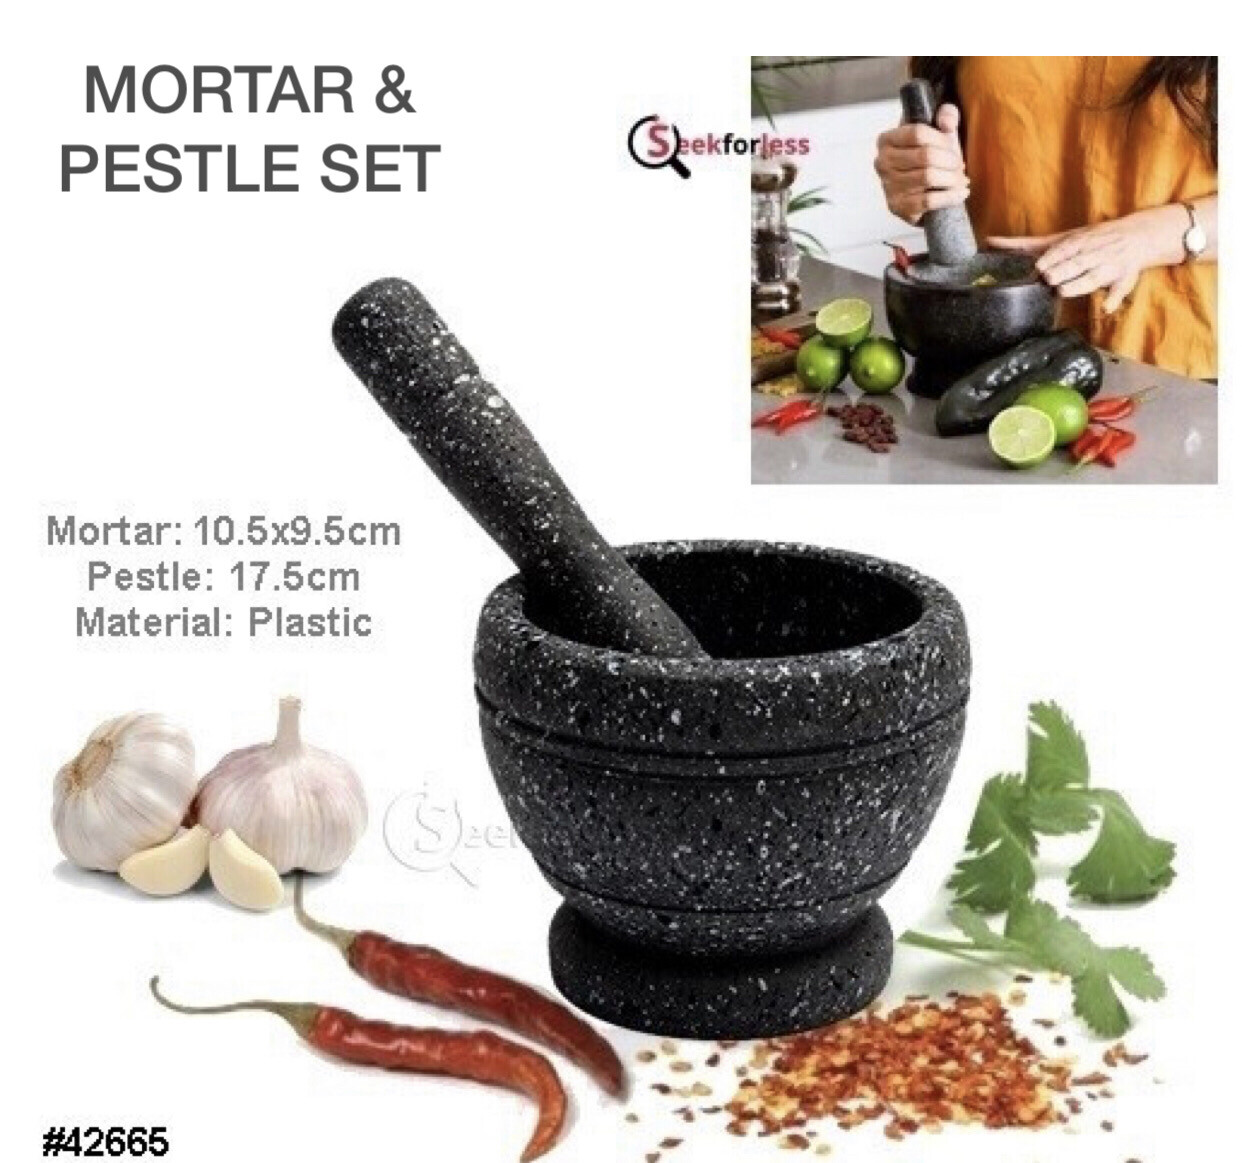 Mortar & Pestle Set